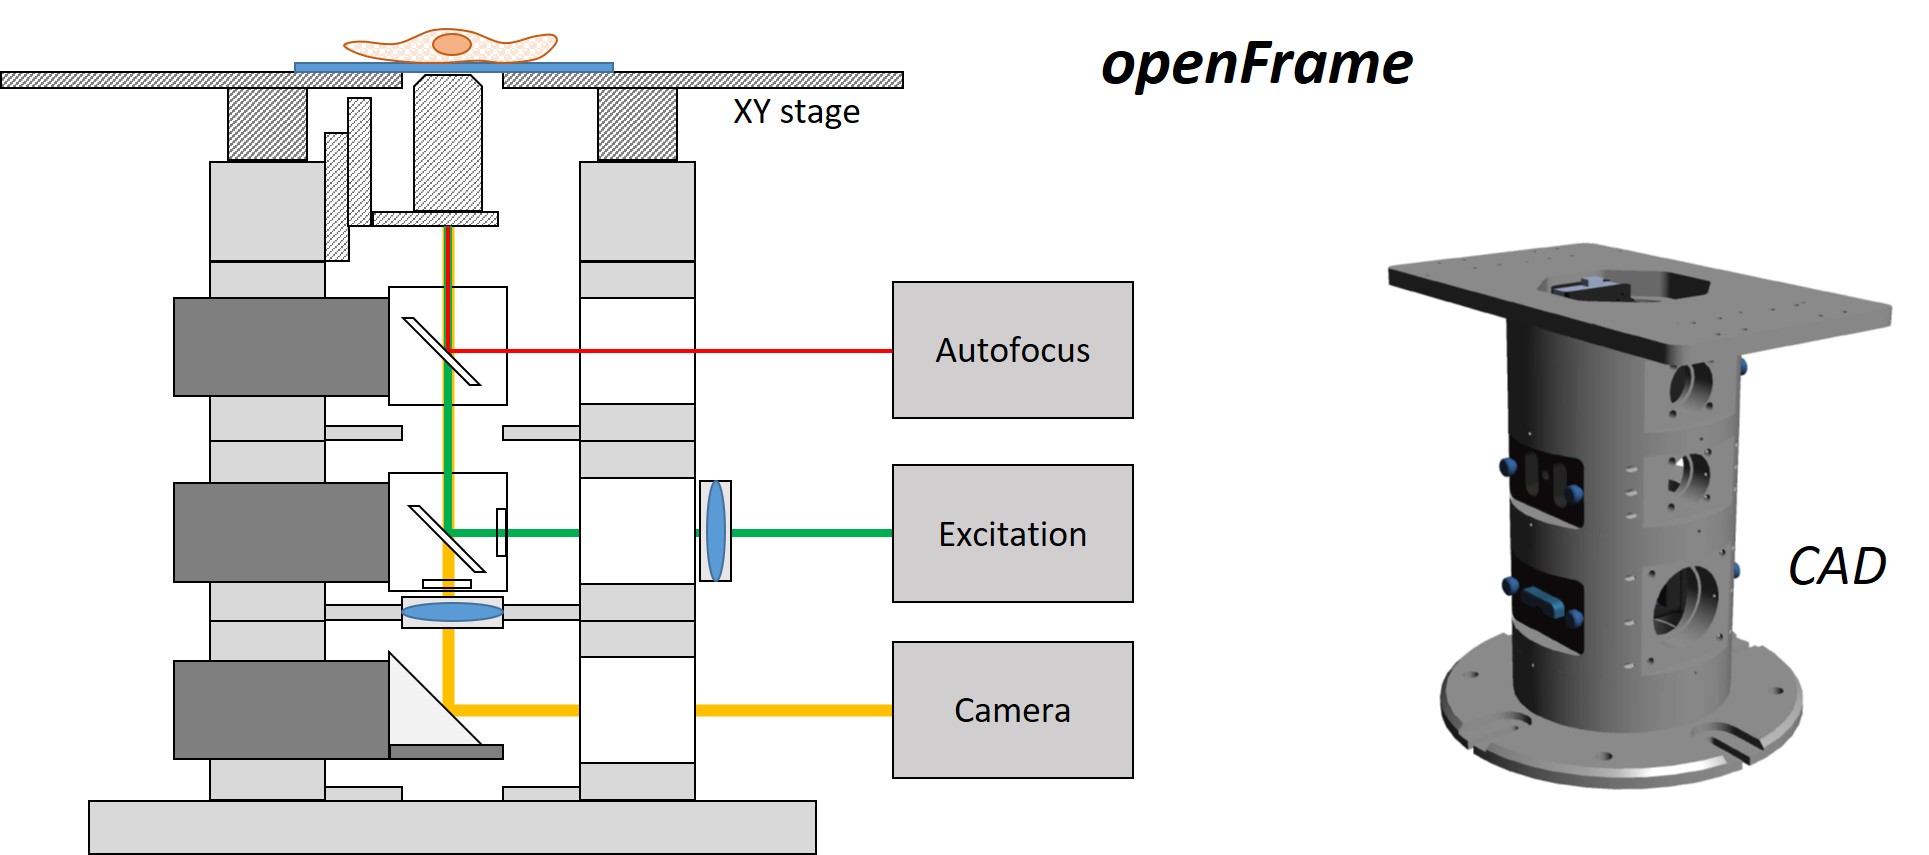 openFrame schematic